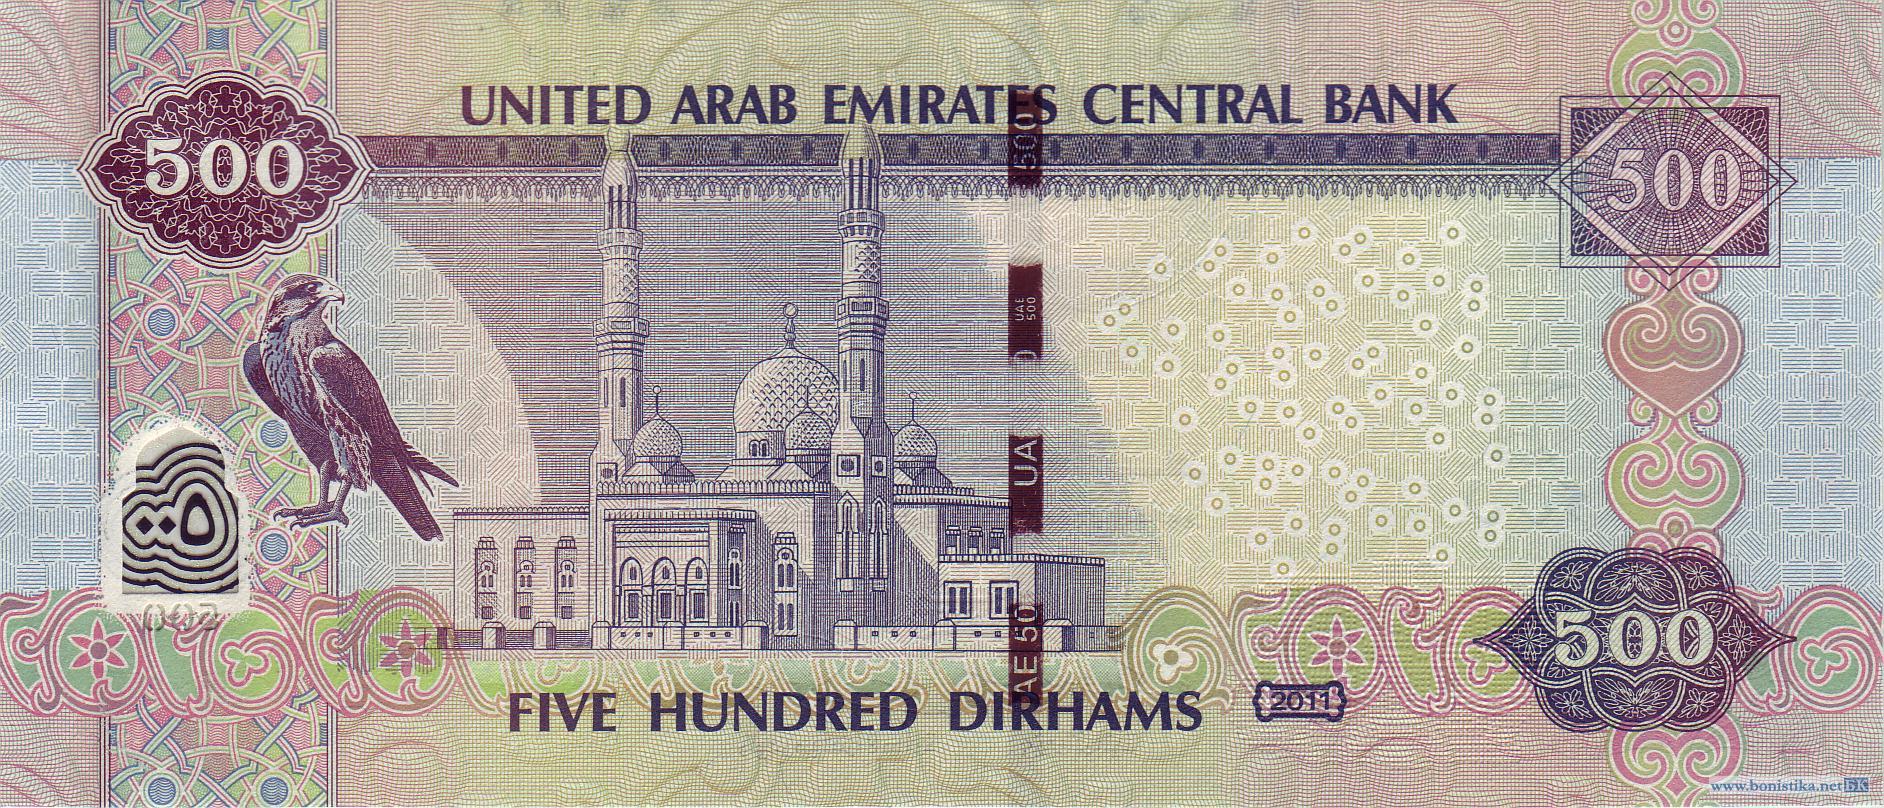 4500 дирхам. Валюта Объединенных арабских Эмиратов. 500 Дирхам ОАЭ банкнота. Купюра 500 дирхам. 500 Арабских дирхам.